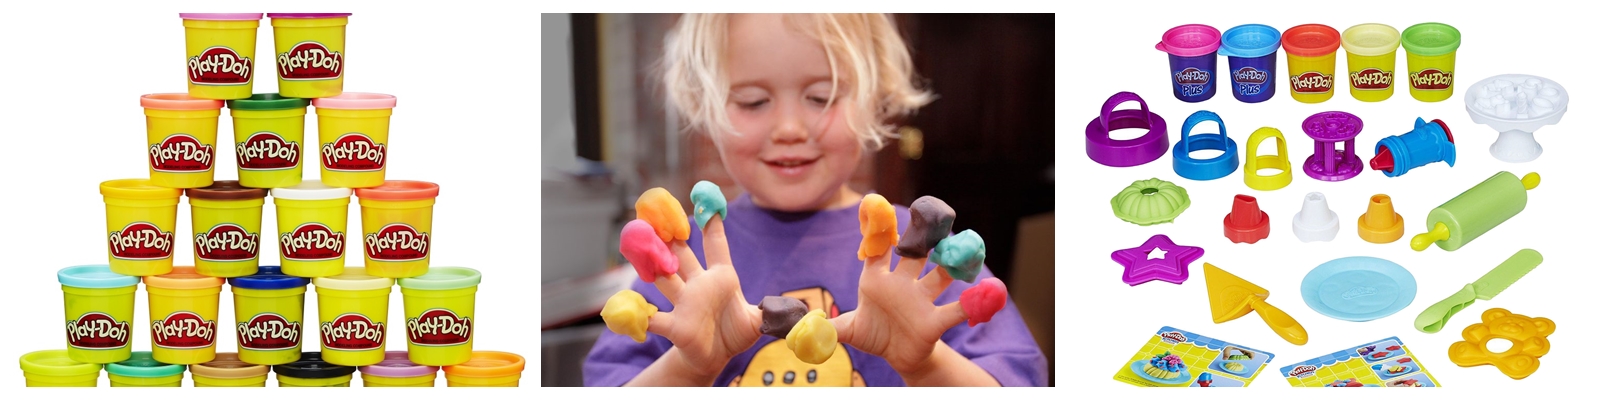 пластилин Play-Doh